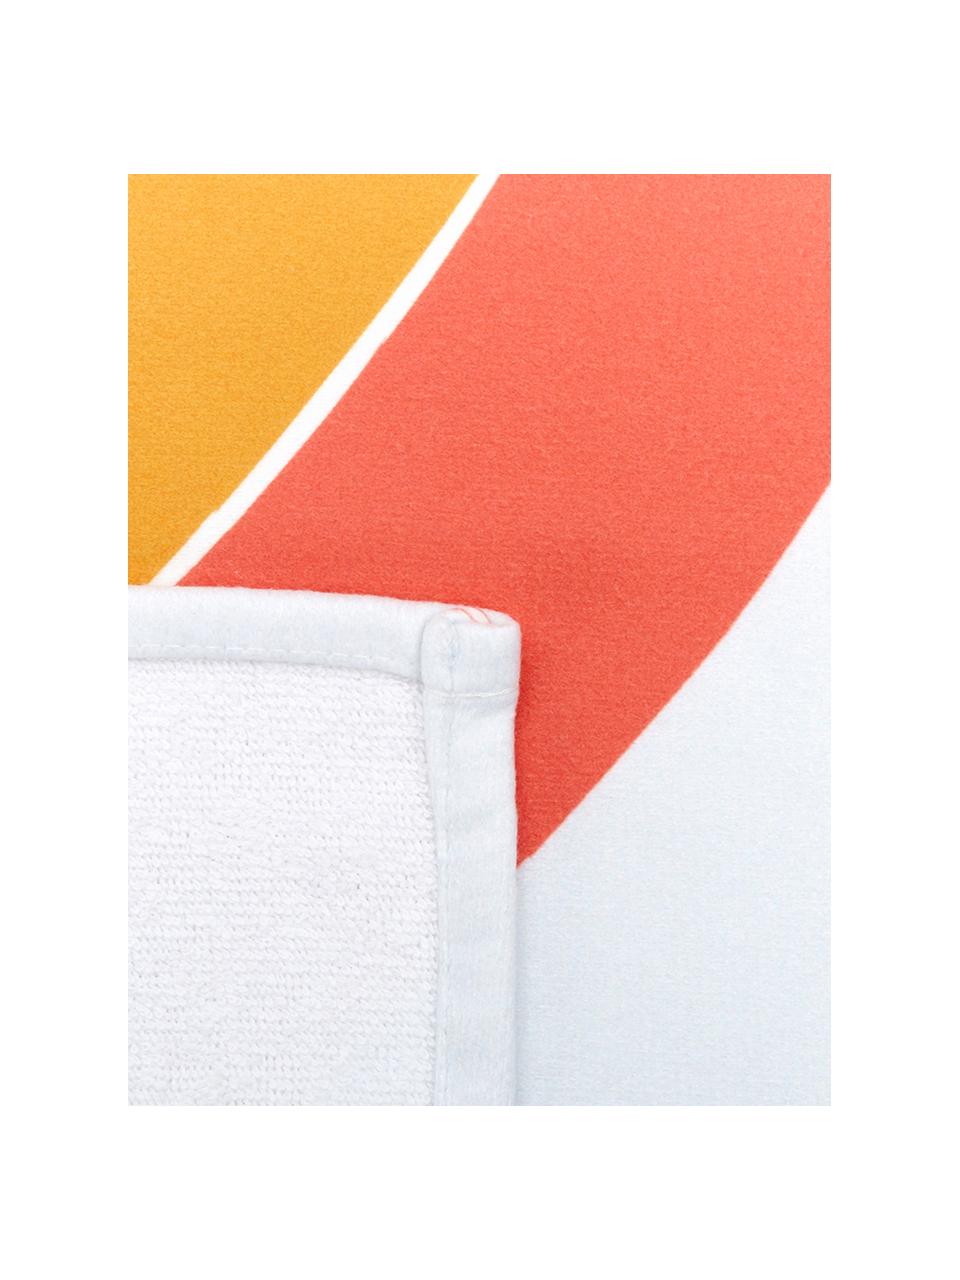 Leichtes Strandtuch Rainbow mit Regenbogen Motiv, 55% Polyester, 45% Baumwolle Sehr leichte Qualität, 340 g/m², Mehrfarbig, 70 x 150 cm